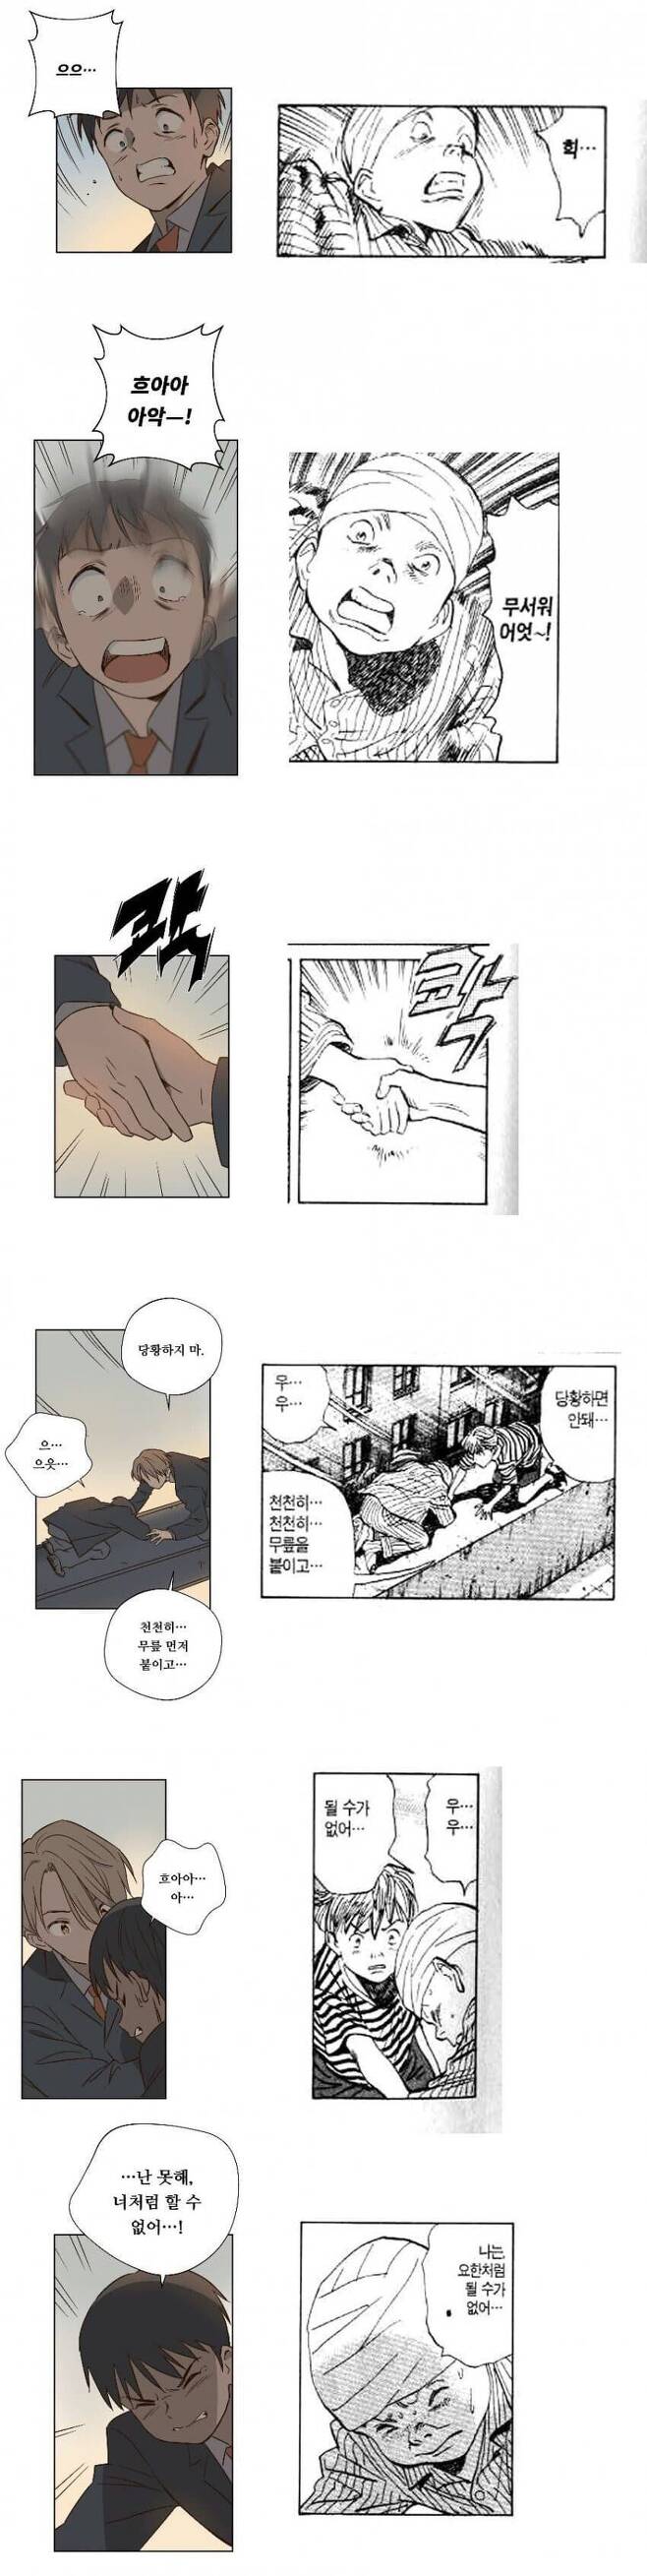 웹툰 '뜨거운 양철지붕 위의 고양이'(왼쪽)과 일본 만화 '몬스터'의 한 장면(오른쪽). 독자들로 하여금 표절에 대한 강한 의구심을 야기한 장면이다. /온라인 커뮤니티